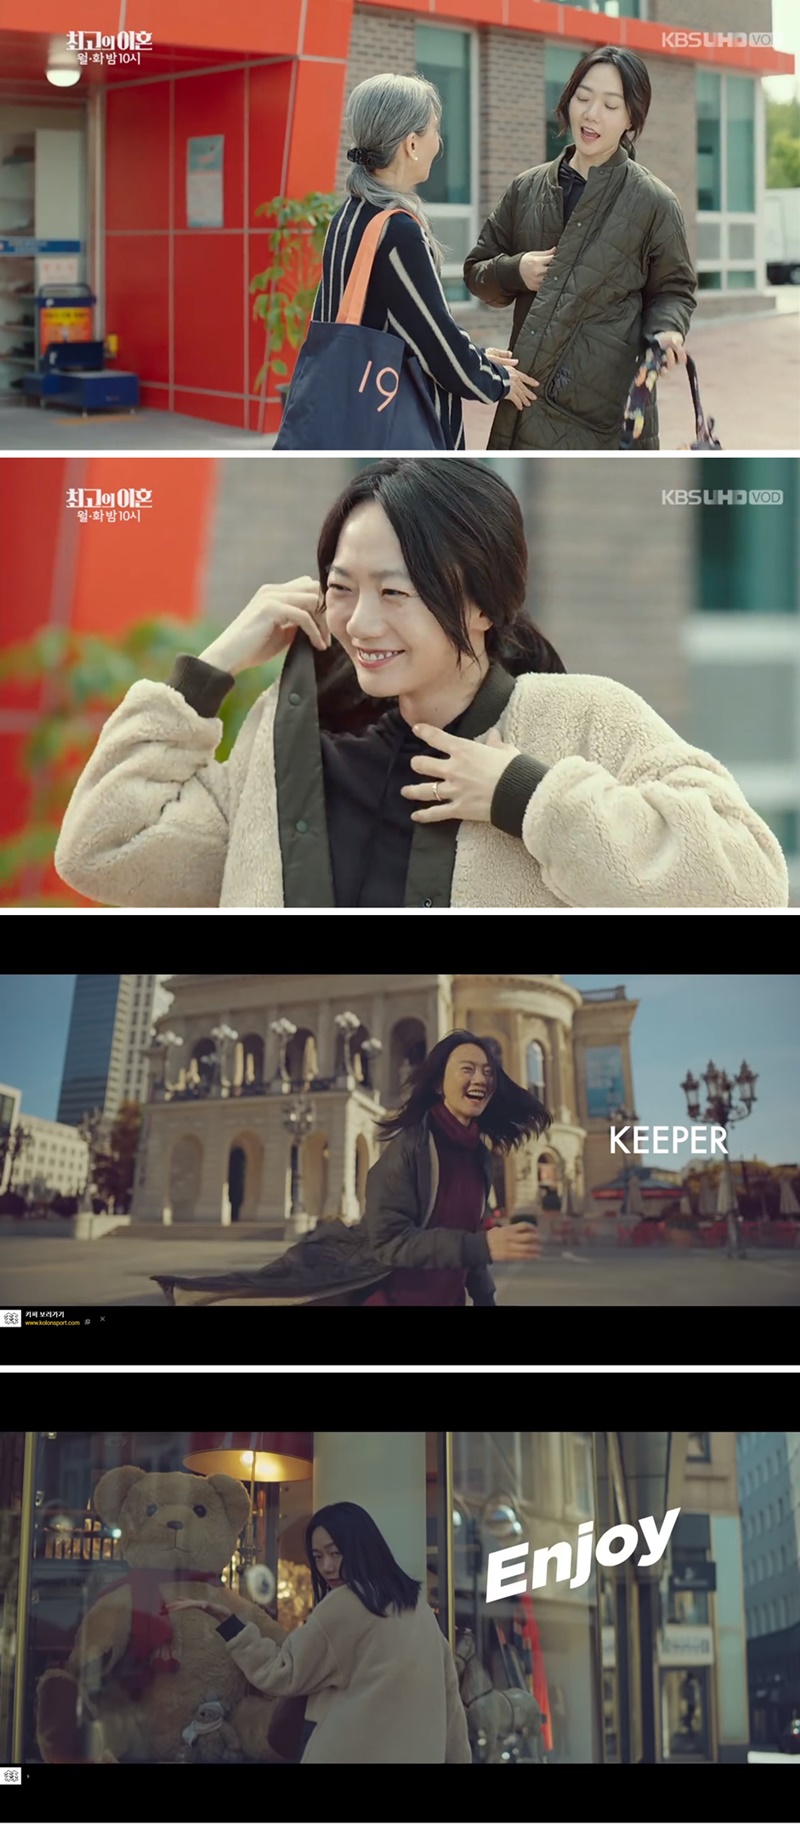 ▲ KBS 드라마 '최고의 이혼' 주인공 배두나는 뒤집어 입을 수 있는 코오롱의 신상 옷을 입고 등장한다. 해당 제품의 광고 모델은 배두나이며, 이 드라마 앞뒤에 드라마와 같은 옷을 입고 등장하는 광고가 나온다.